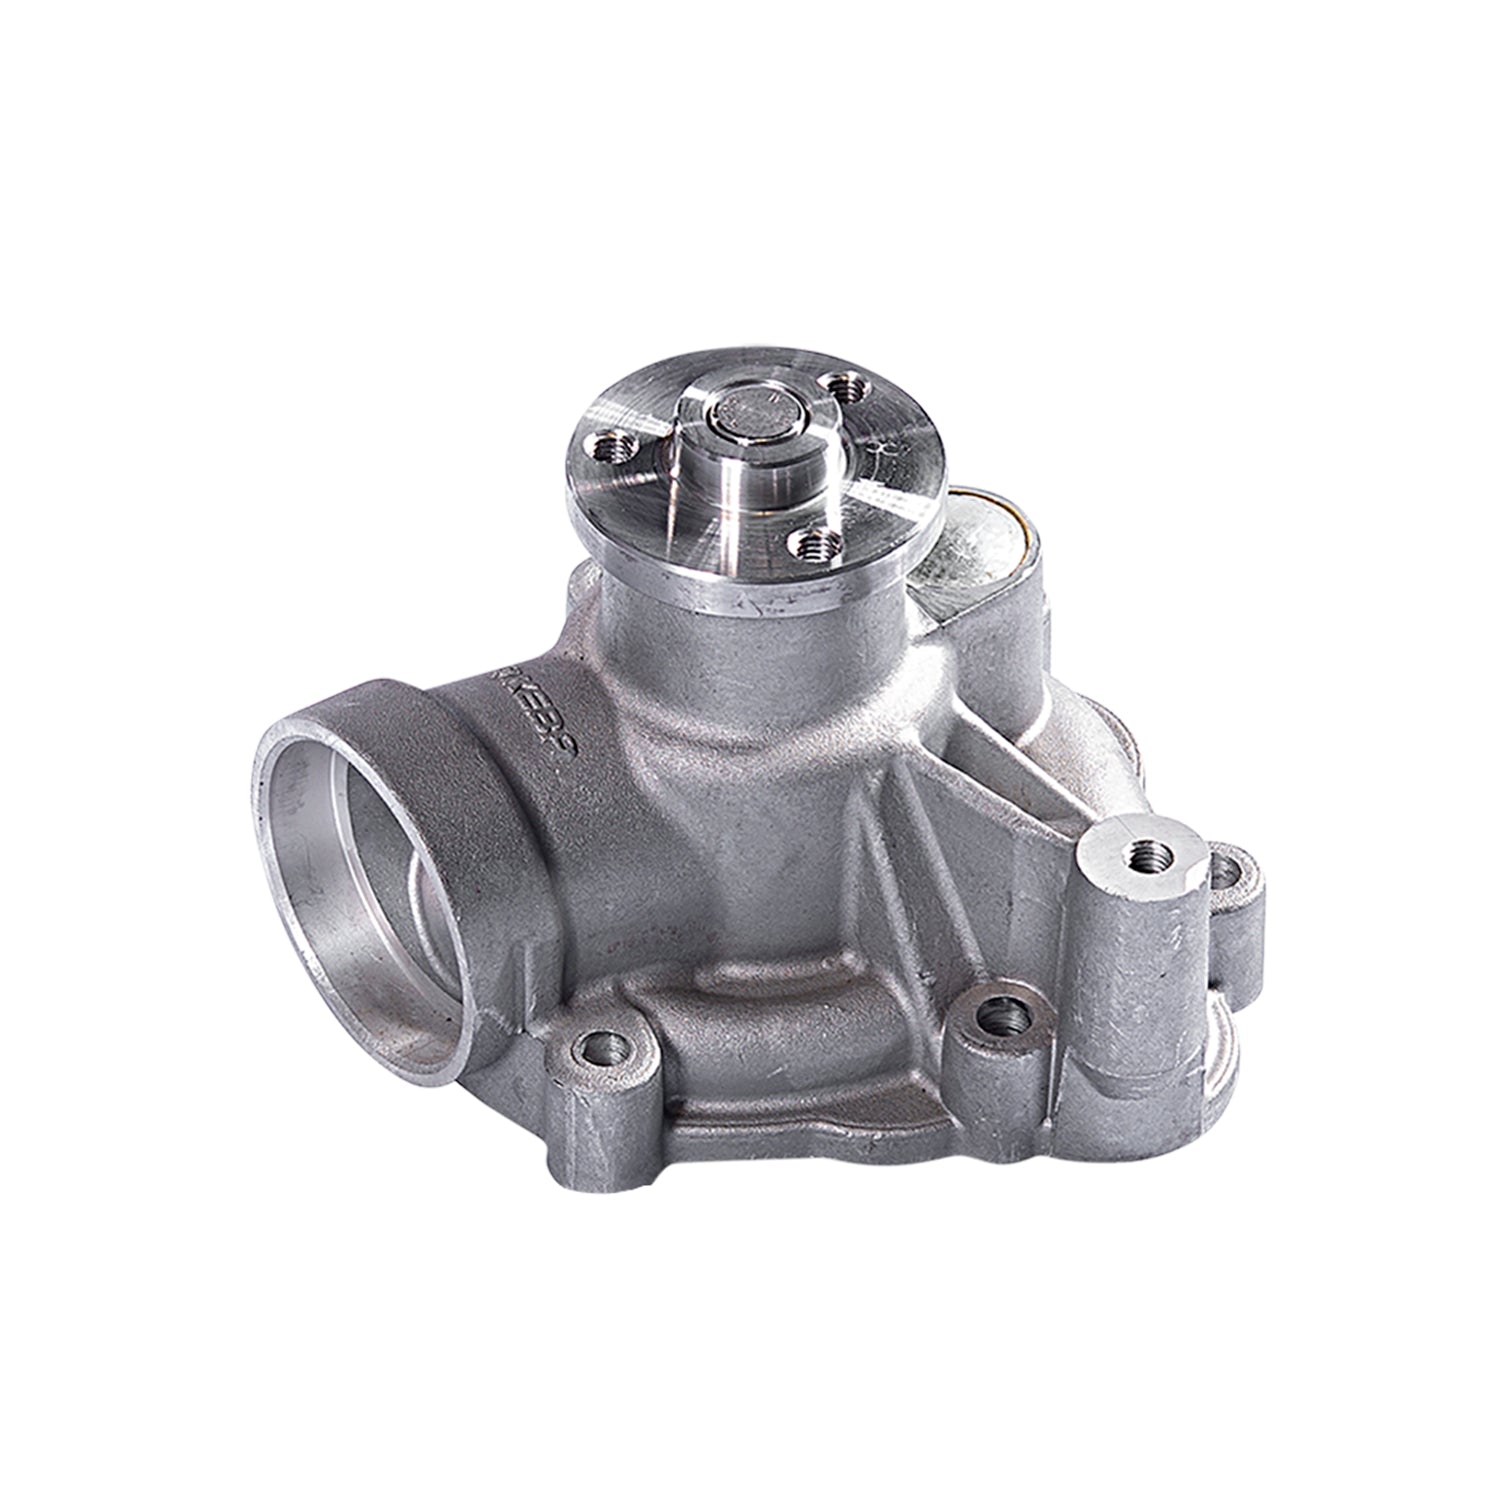 Water Pump Replacement for DEUTZ 1012 2012 04256850 04206172 BFM2012